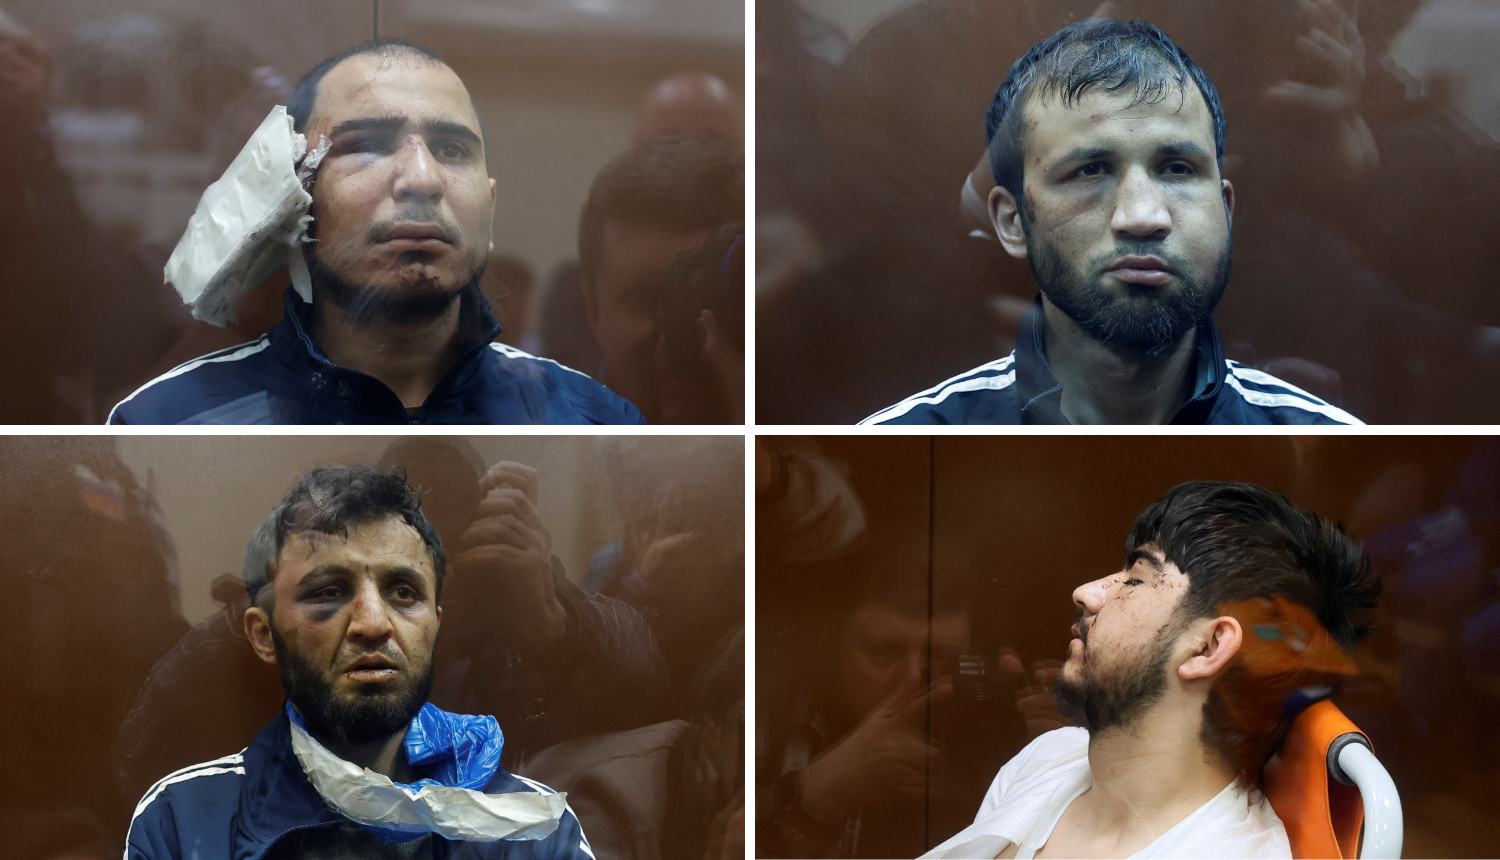 Kruži uznemirujući video: Rusi brutalno mučili uhićene, jednom su odrezano uho gurali u usta?